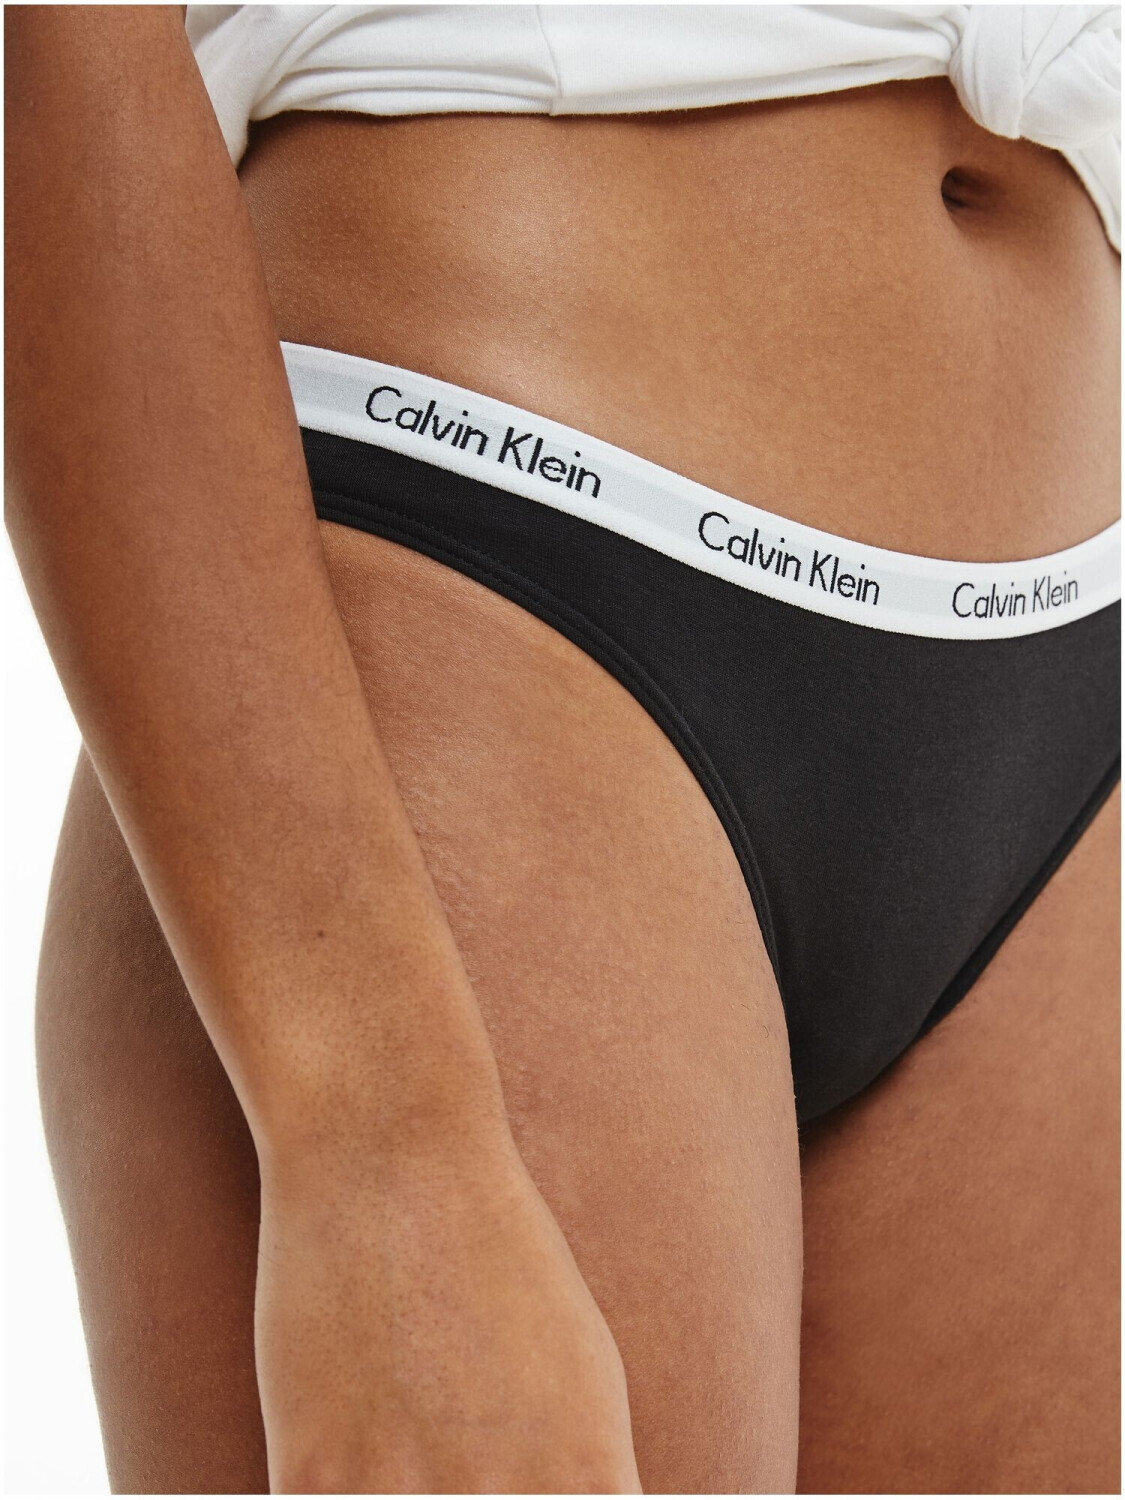 Calvin Klein Carousel 3-Pack Briefs black/black/white ab 27,99 €